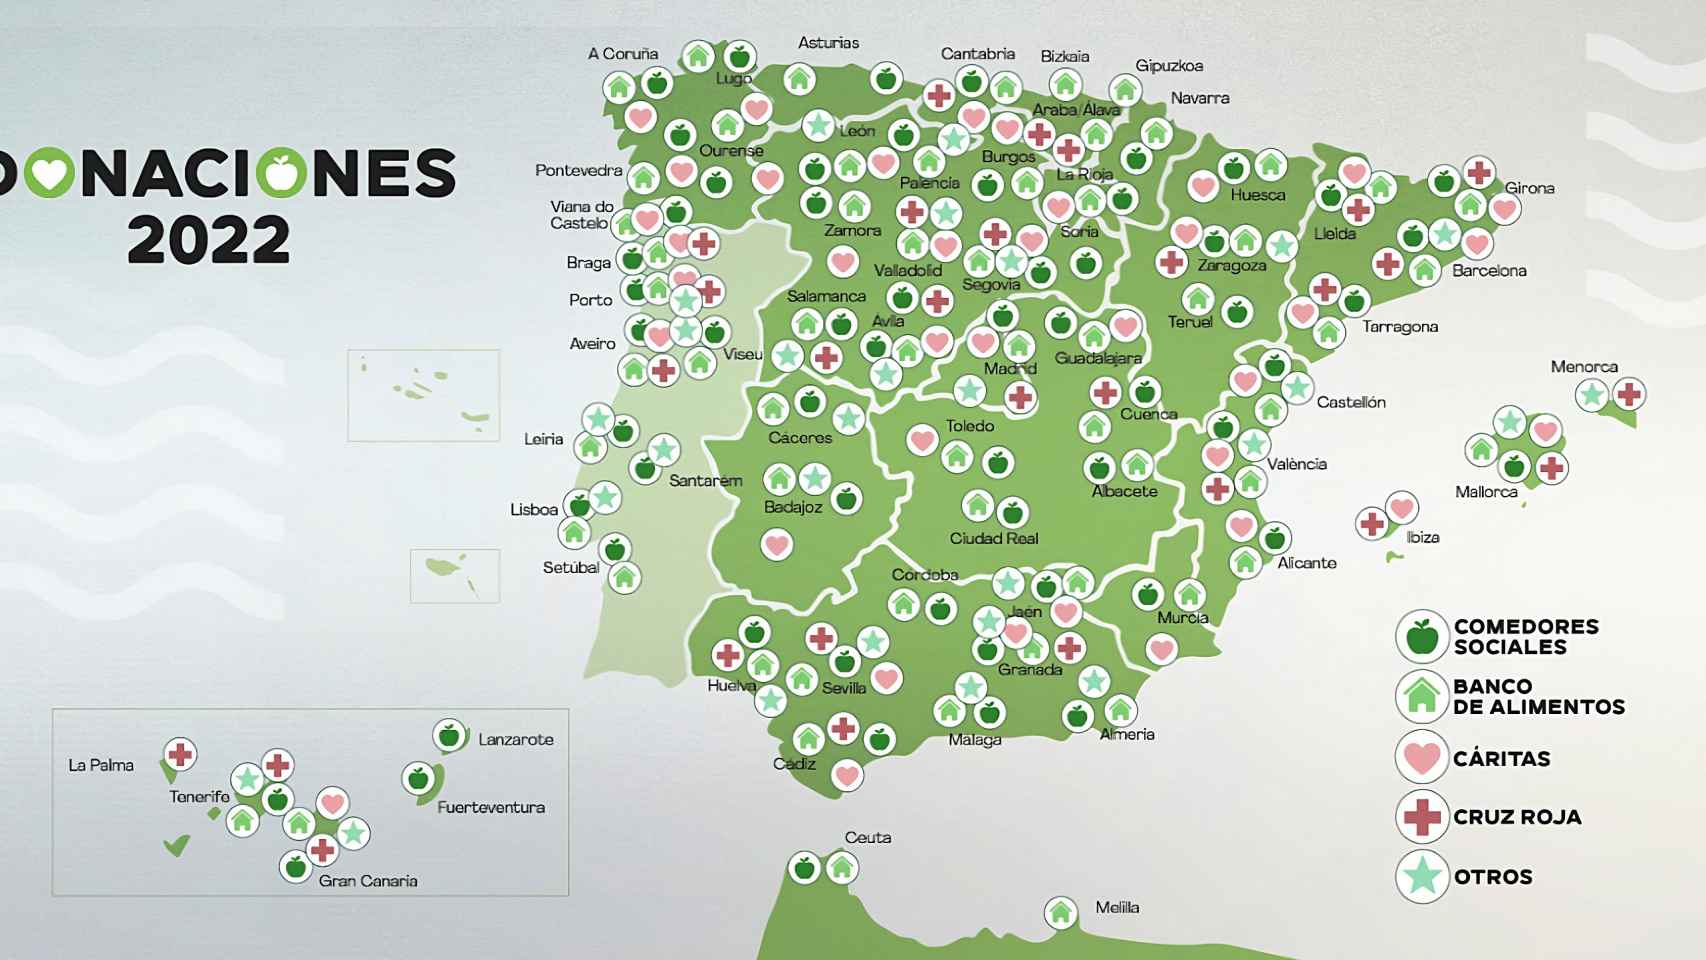 El mapa del tipo de destinatarios de las donaciones de alimentos de Mercadona en 2022.